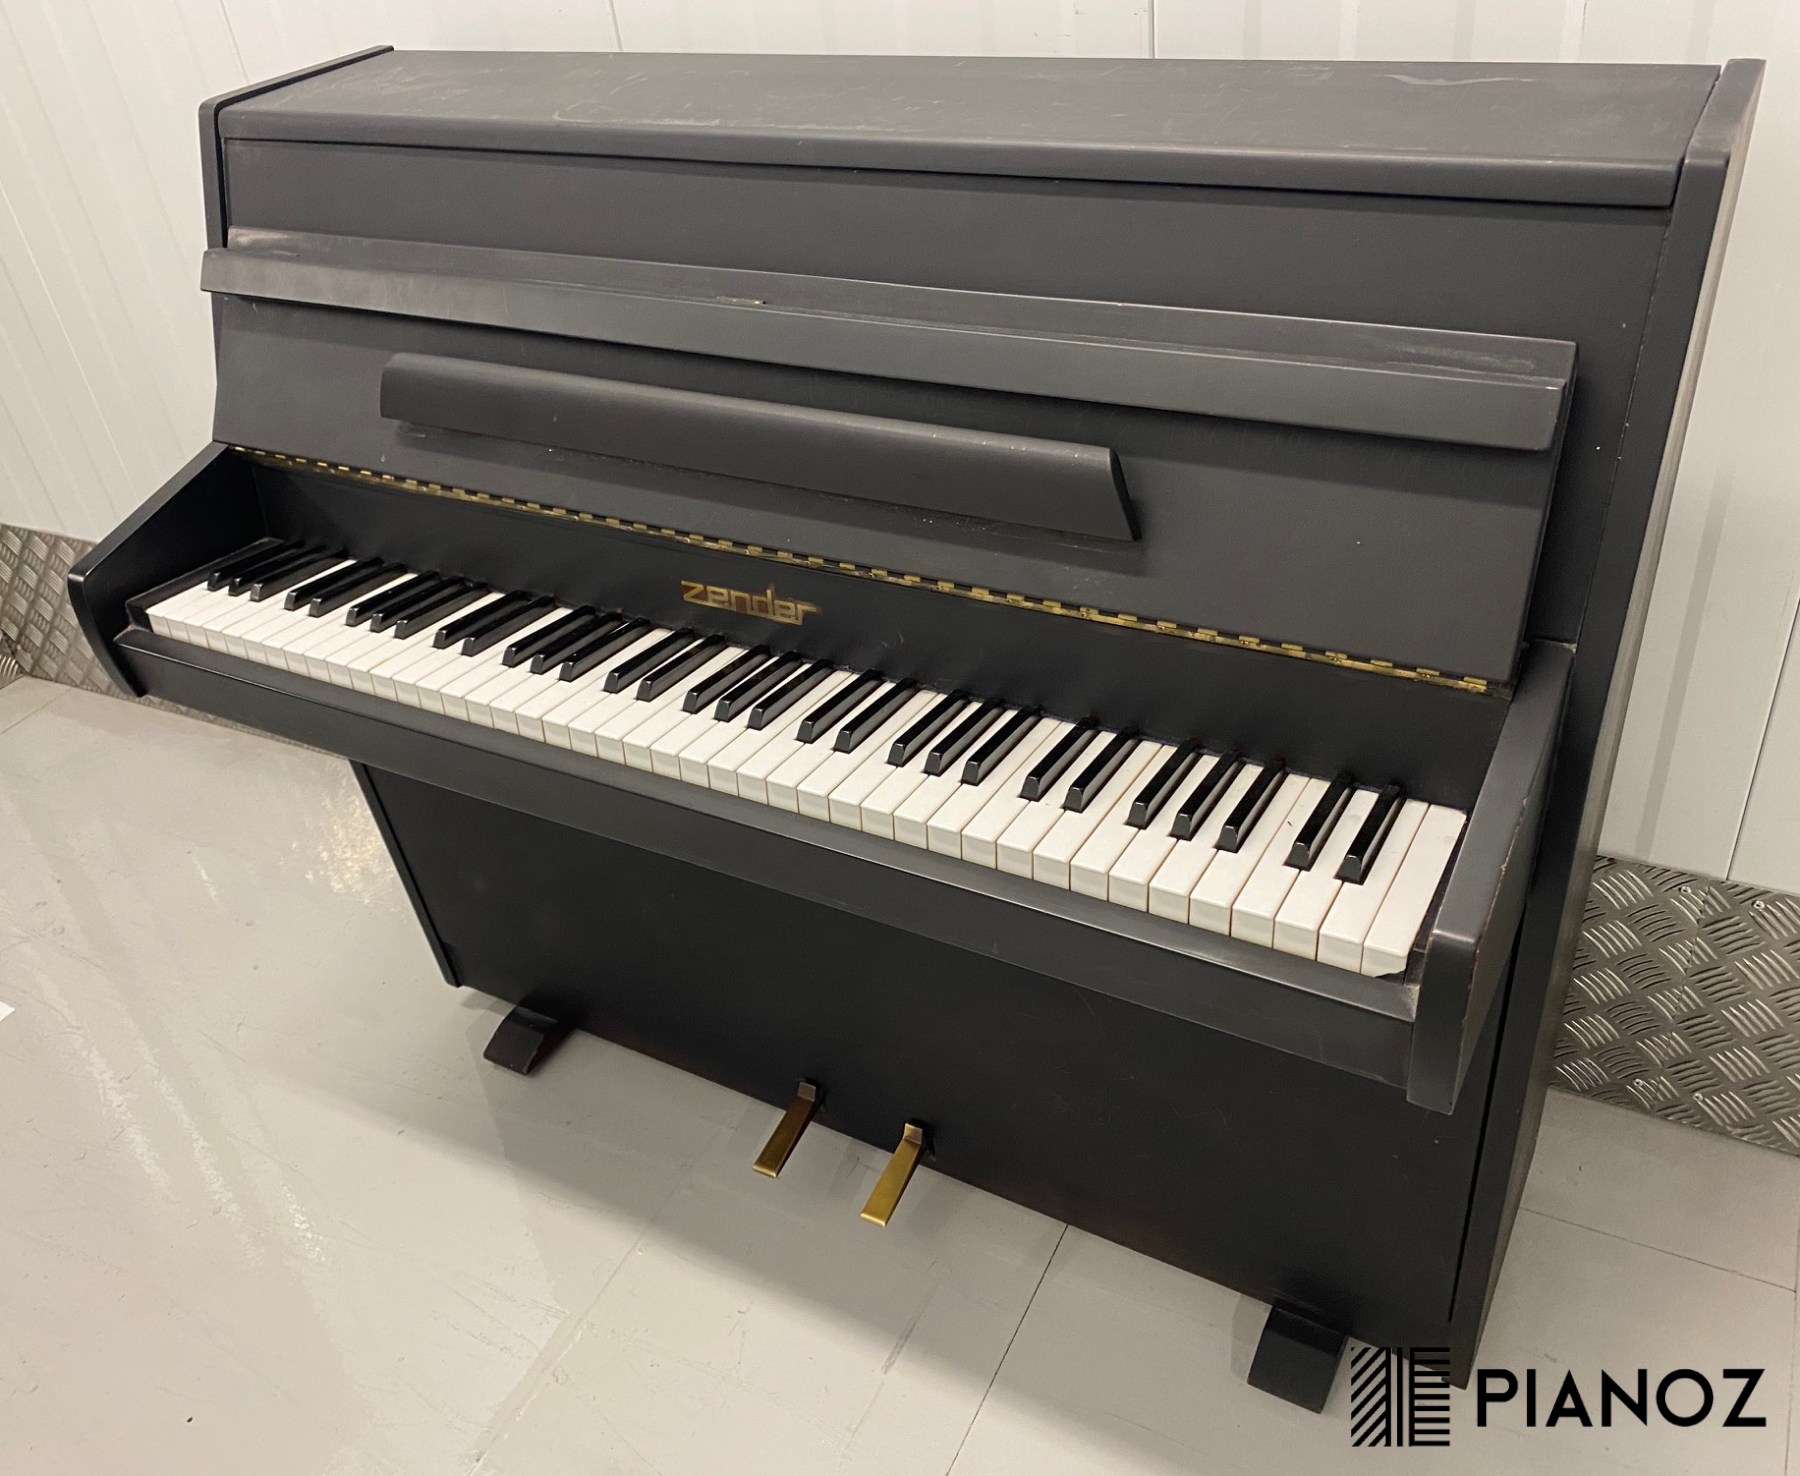 Zender Satin Black Mini Upright Piano piano for sale in UK